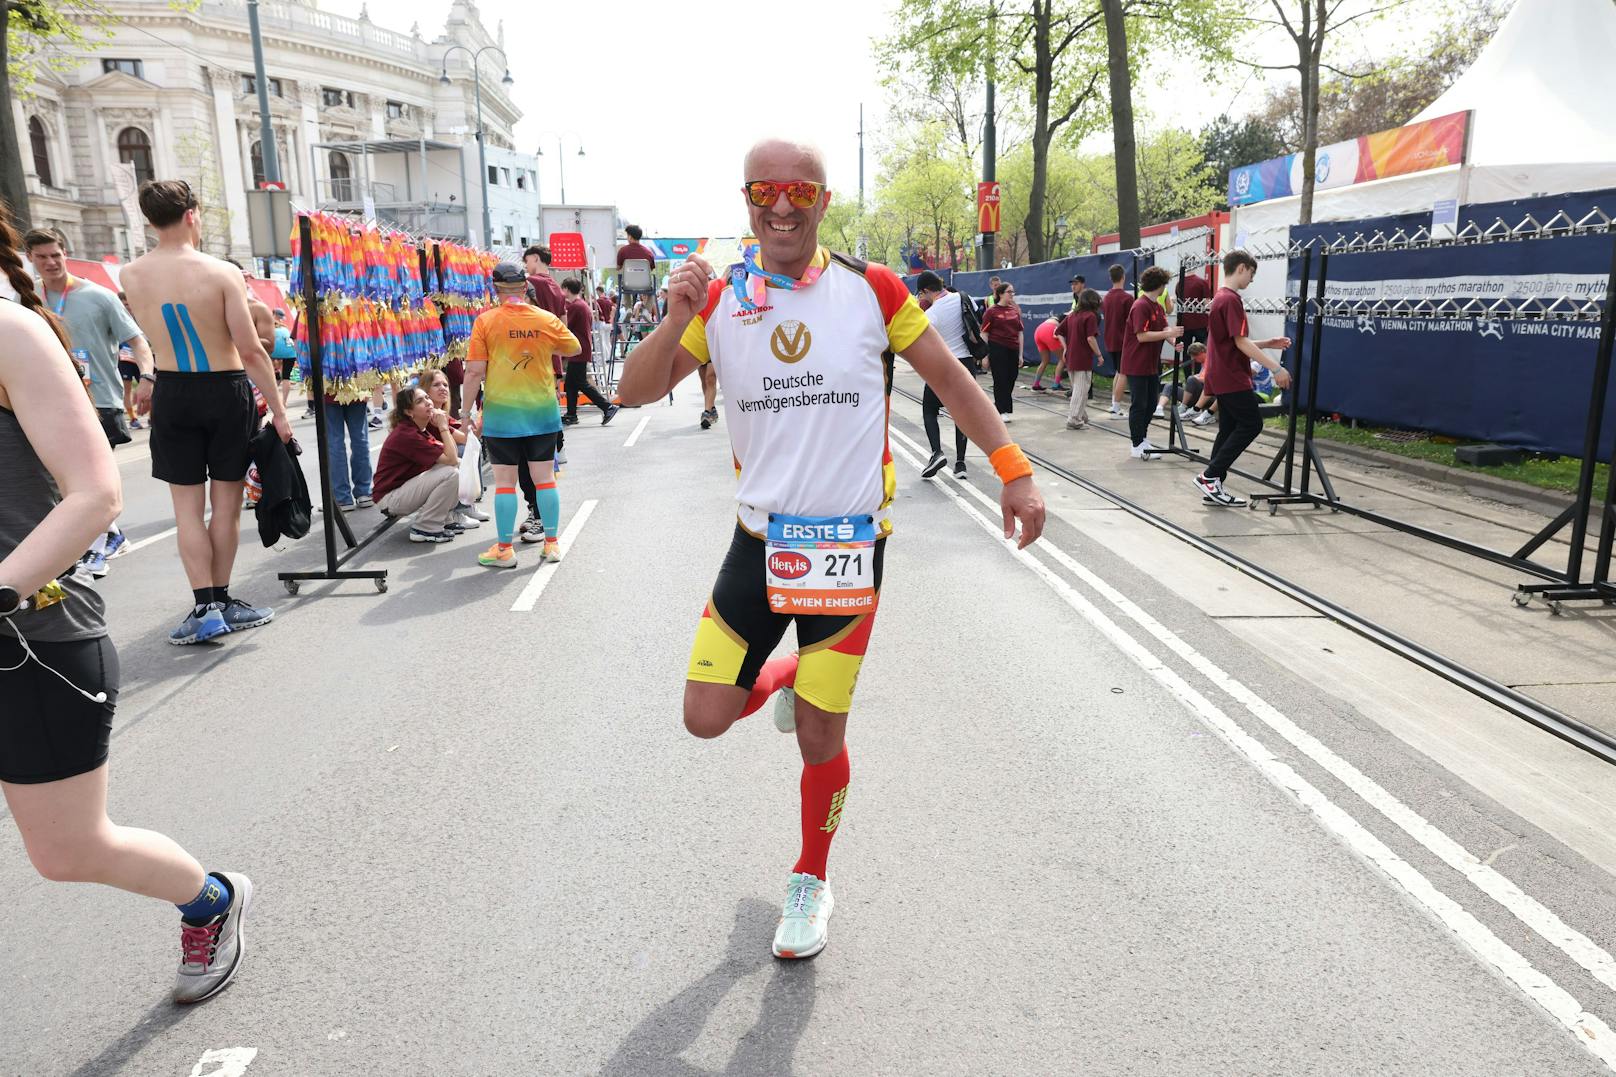 Emin da Silva hüpfte die Halbmarathon-Distanz rückwärts auf einem Bein.